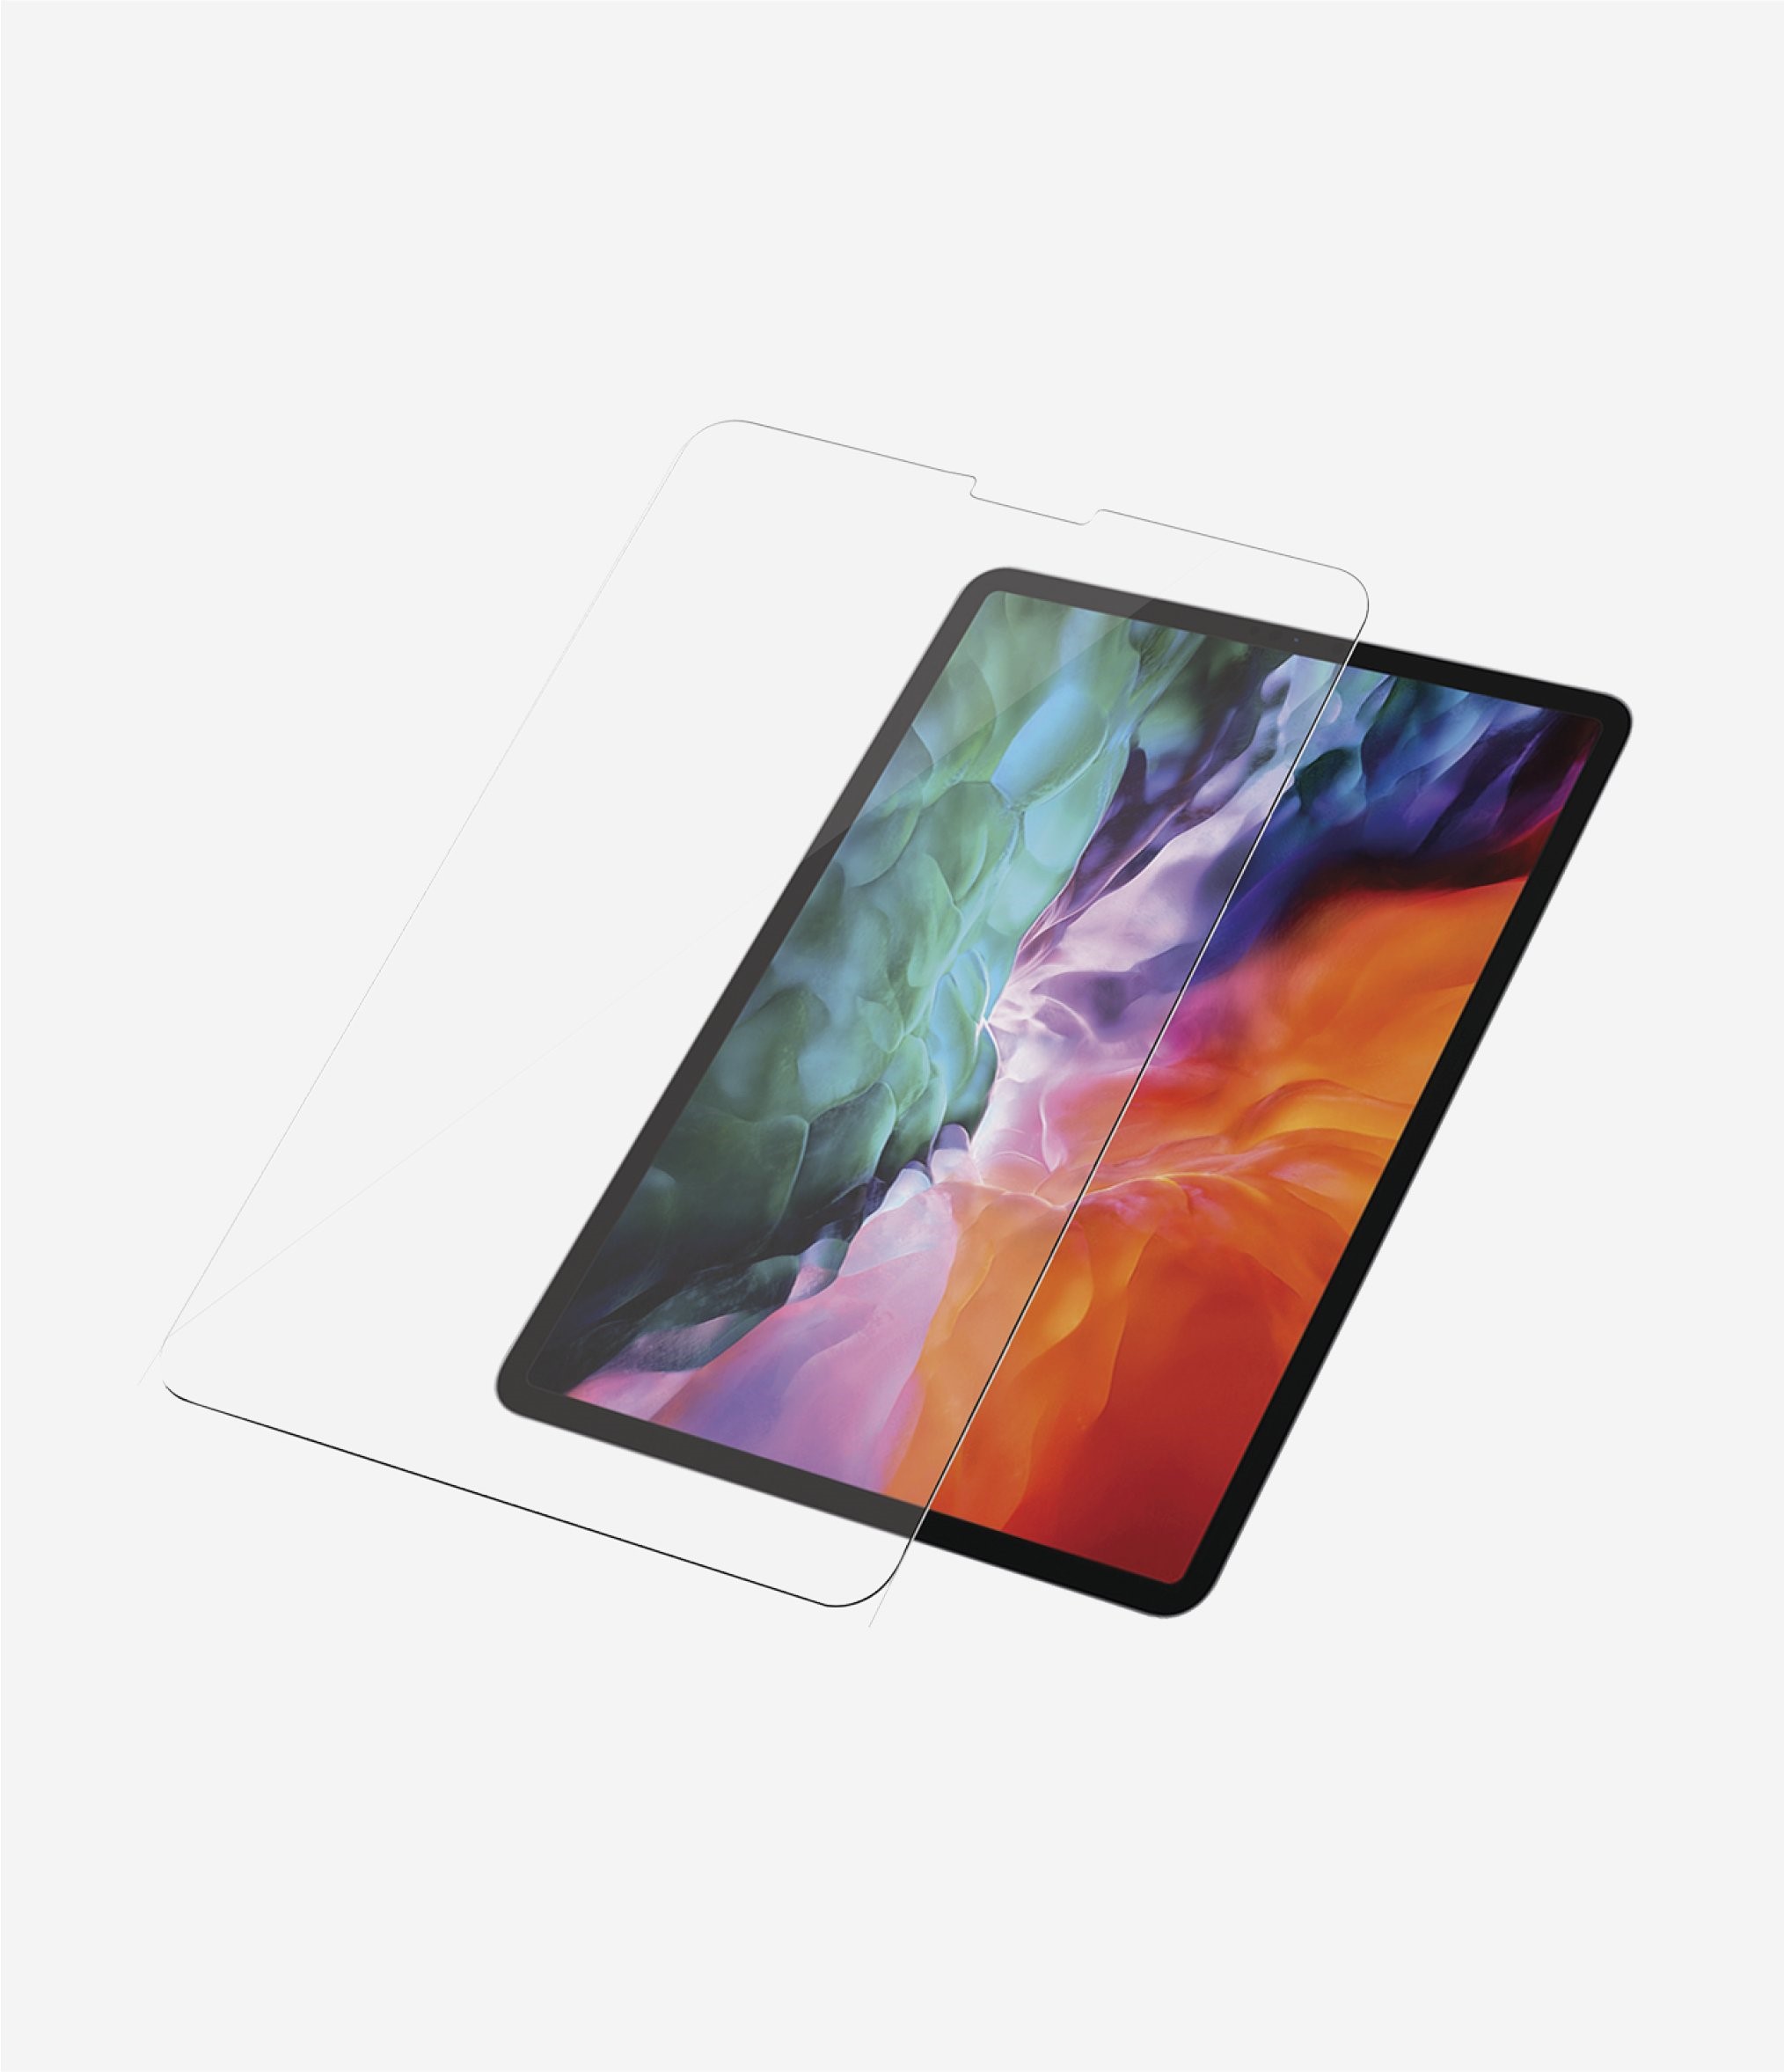 Miếng dán màn hình chống trầy cho iPad Pro 9.7inch